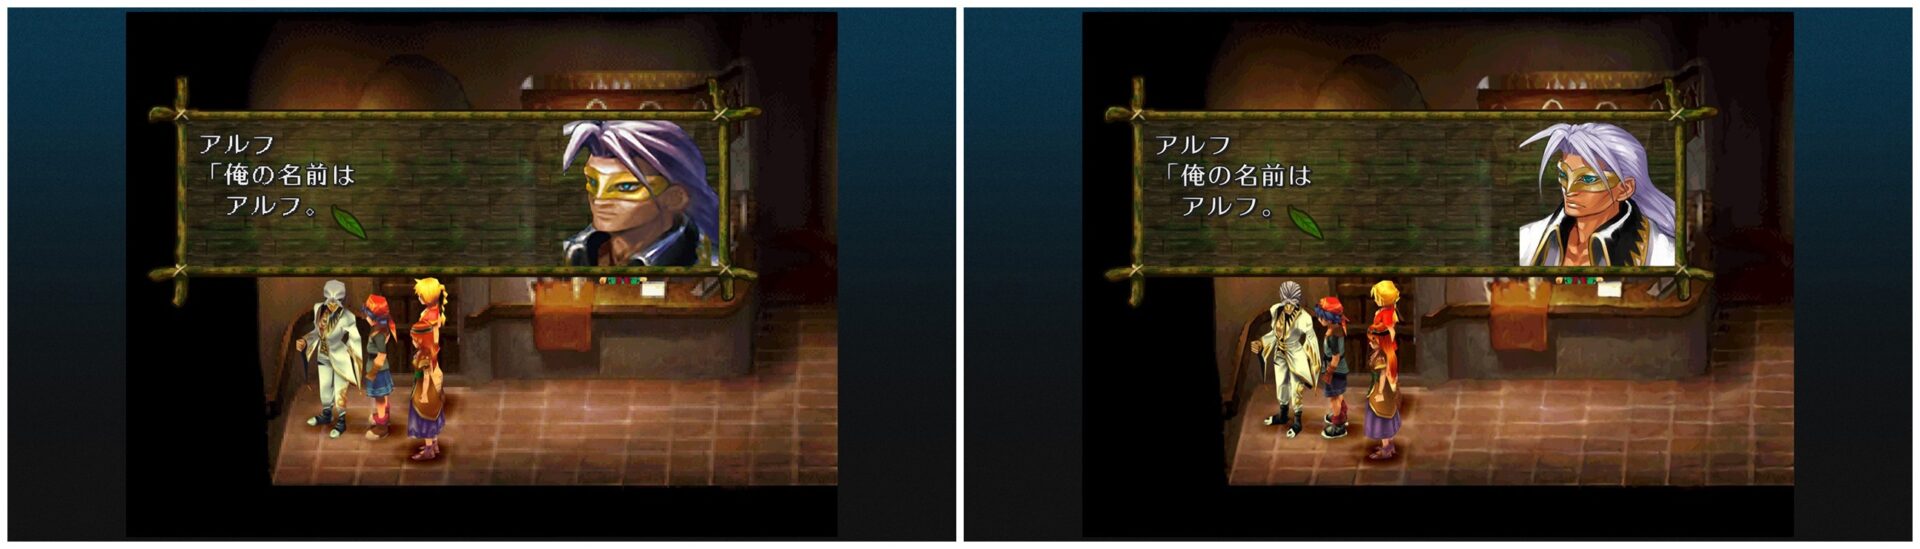 เทียบกันชัด ๆ ภาพในเกม Chrono Cross รีมาสเตอร์กับต้นฉบับบน PS1